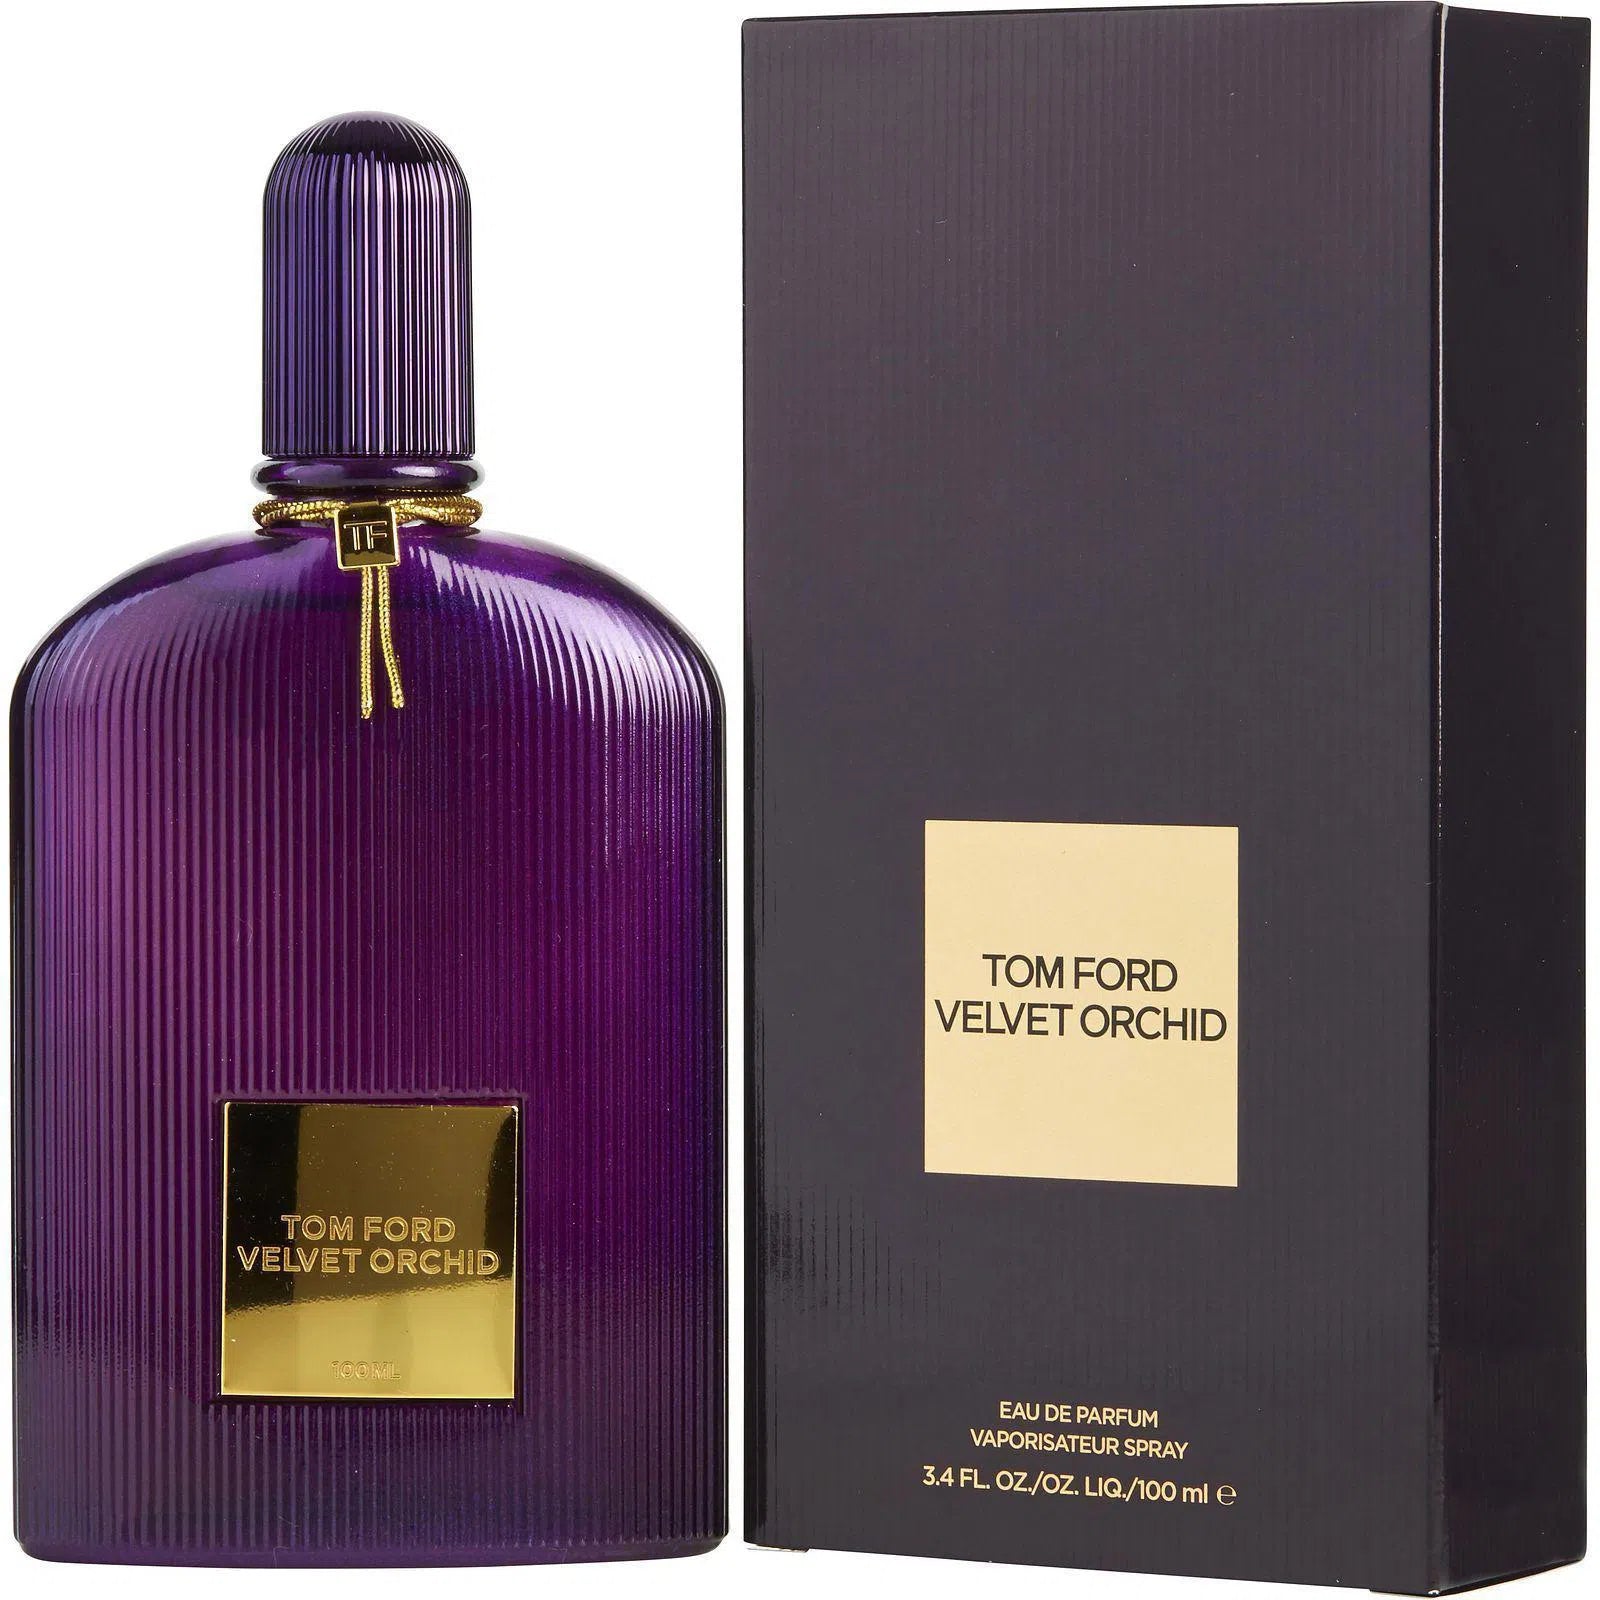 Perfume Tom Ford Velvet Orchid EDP (U) / 100 ml - 888066023955- Prive Perfumes Honduras